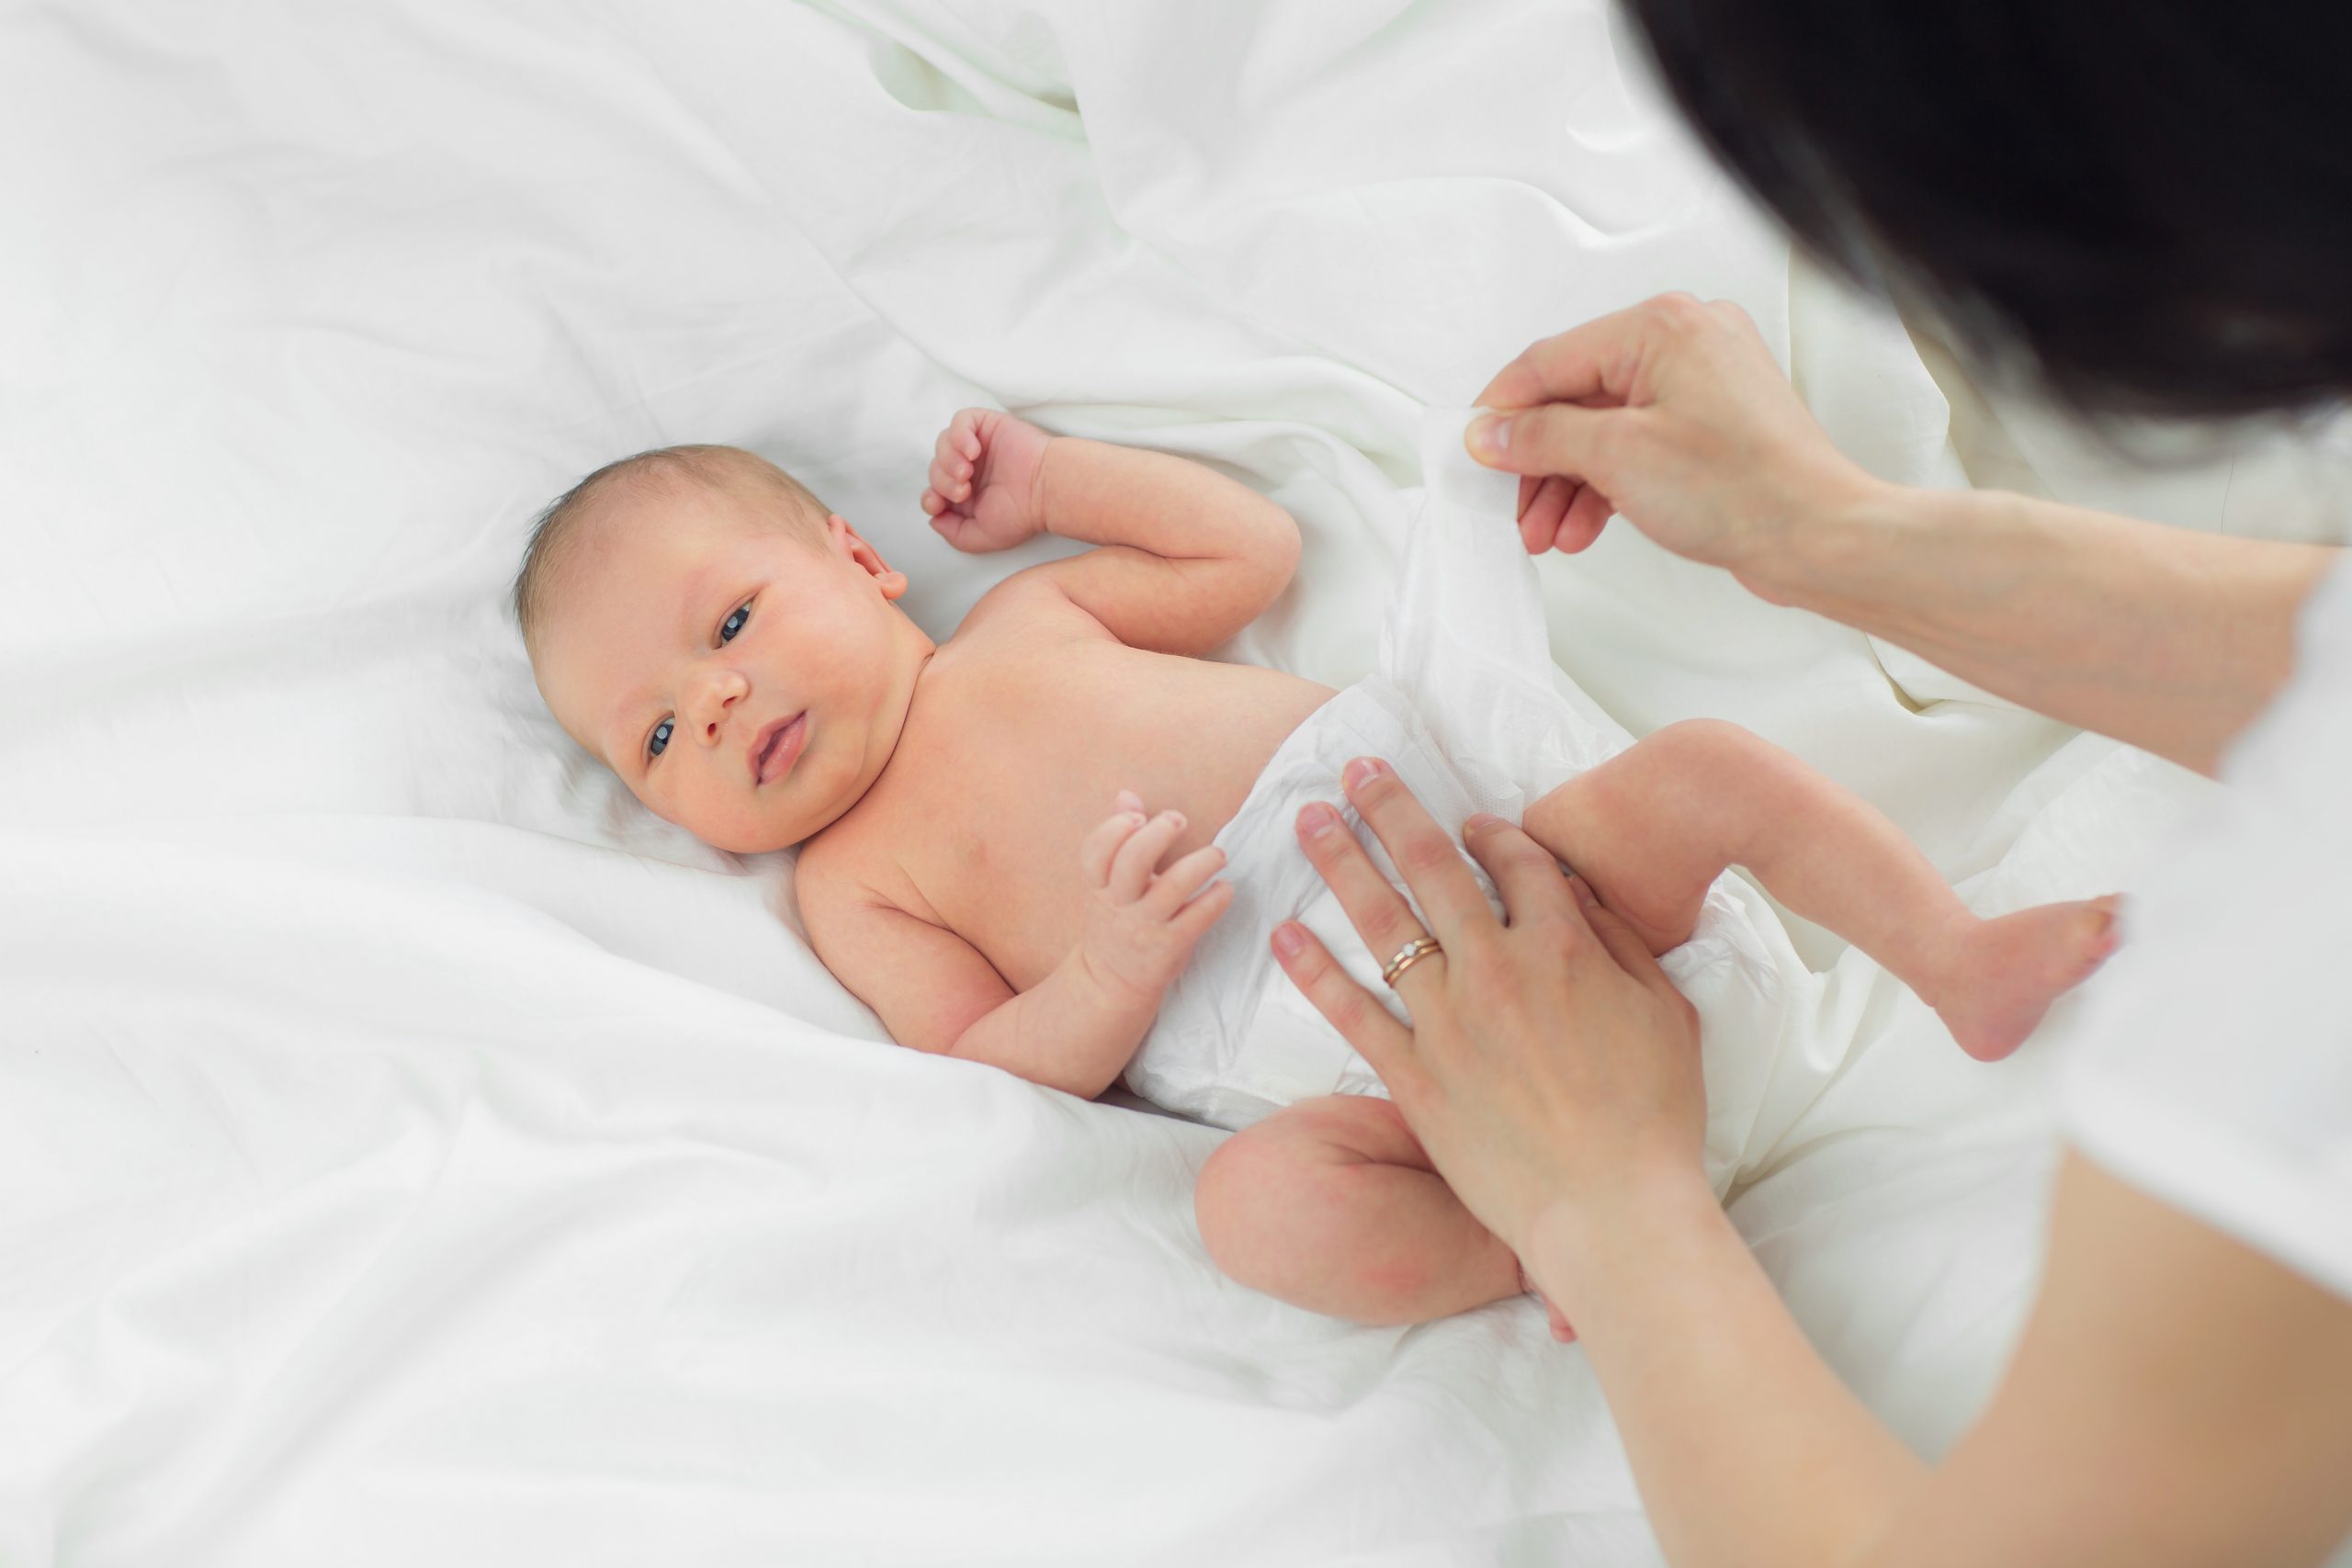 Changer la couche de bébé : quand, combien de fois par jour ?